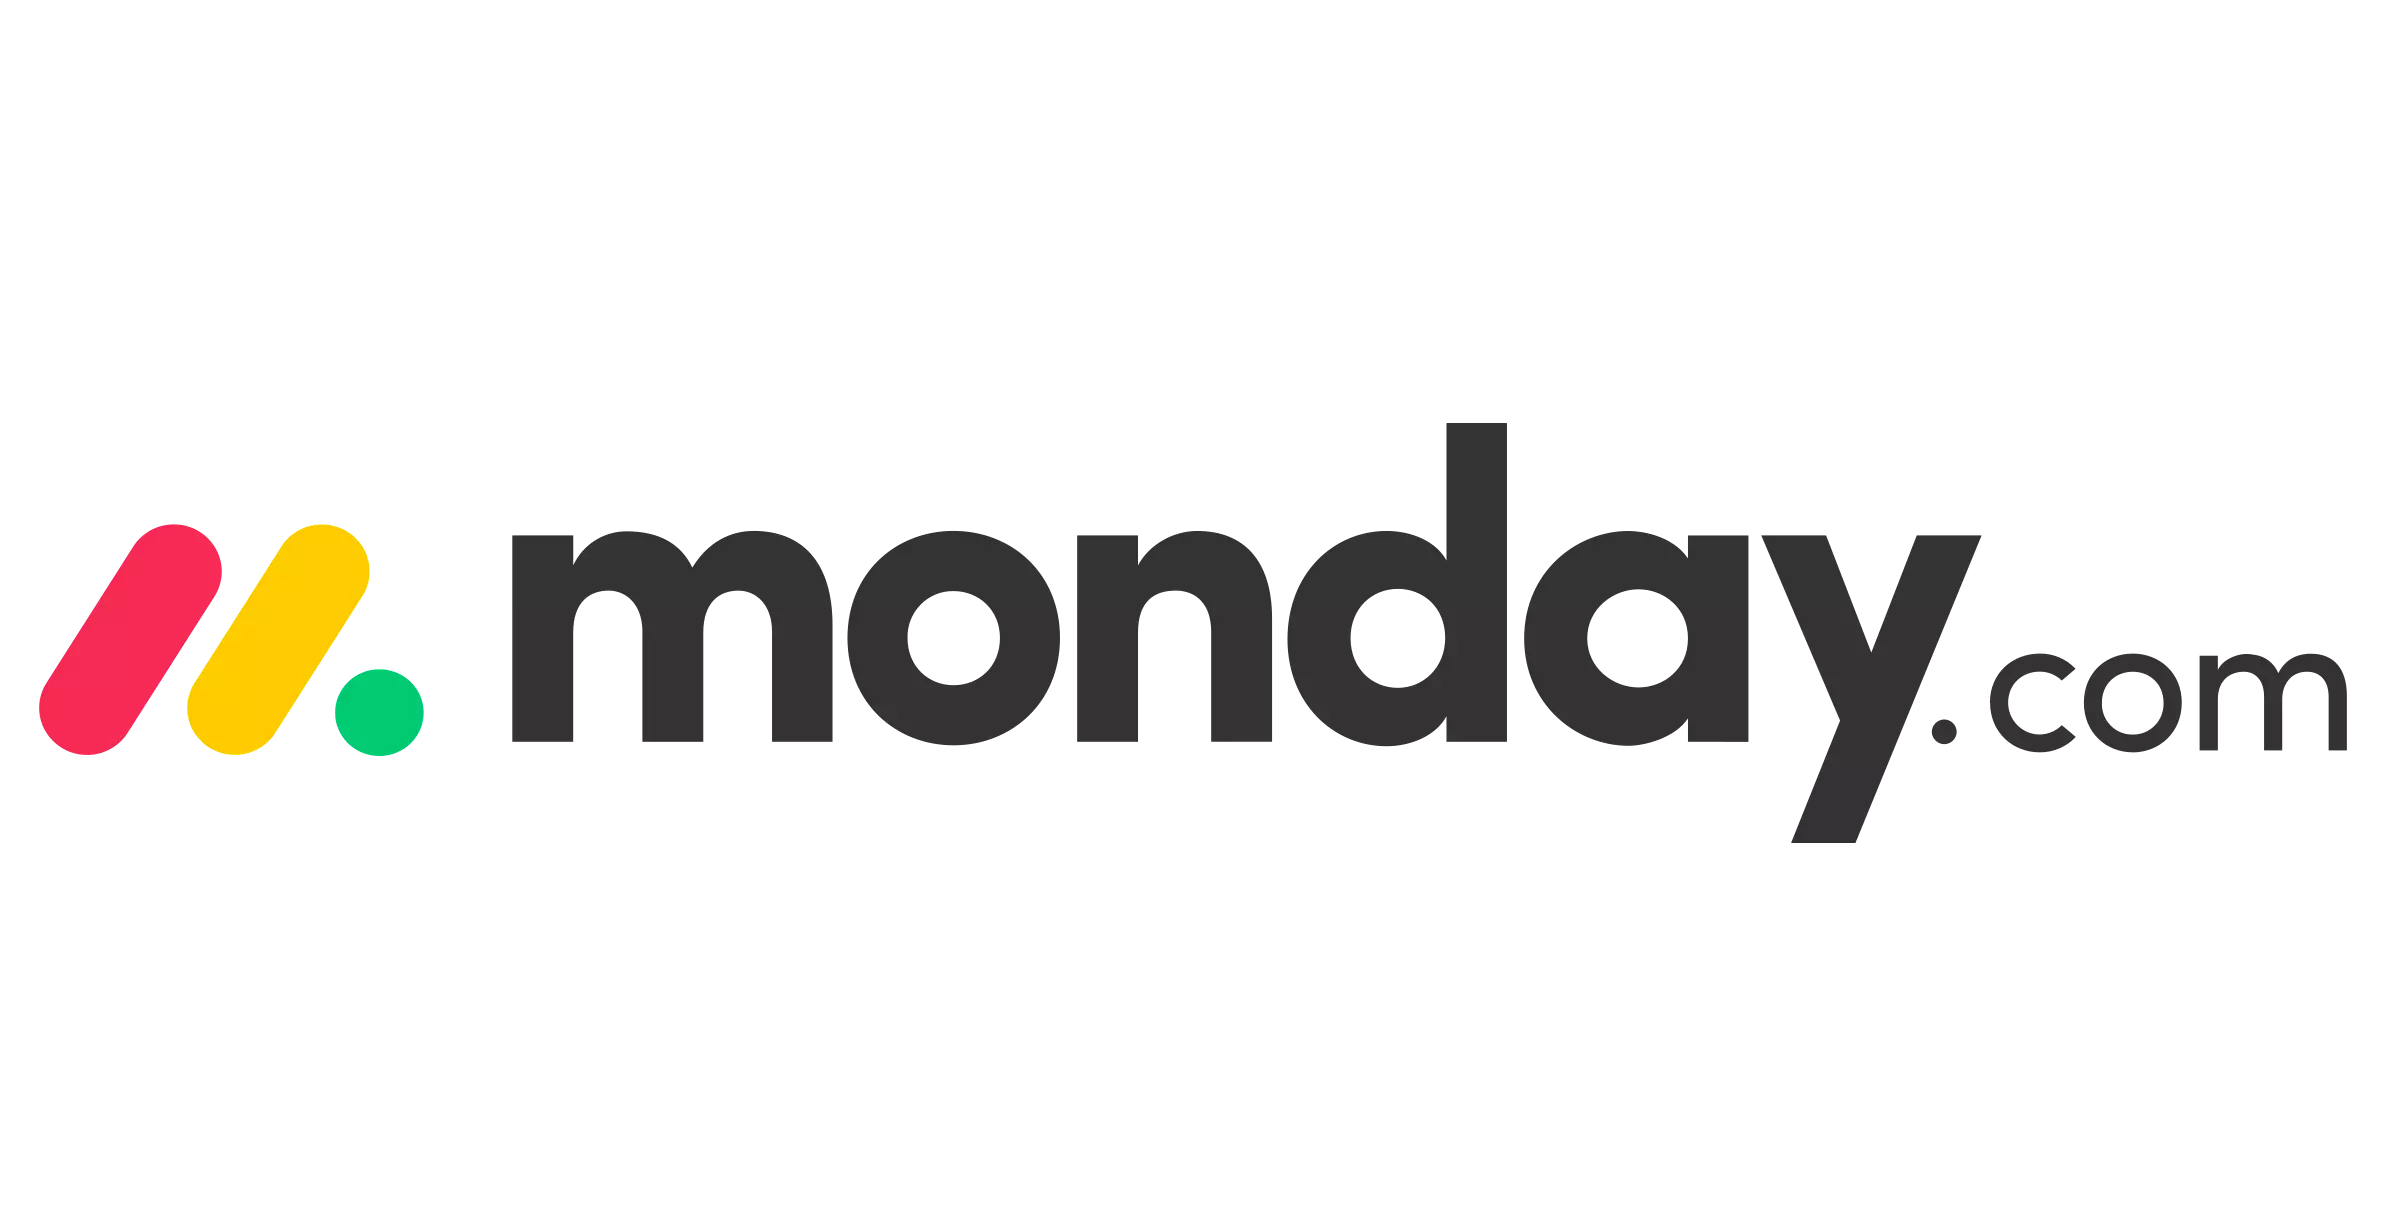 monday-com-alternative-logo